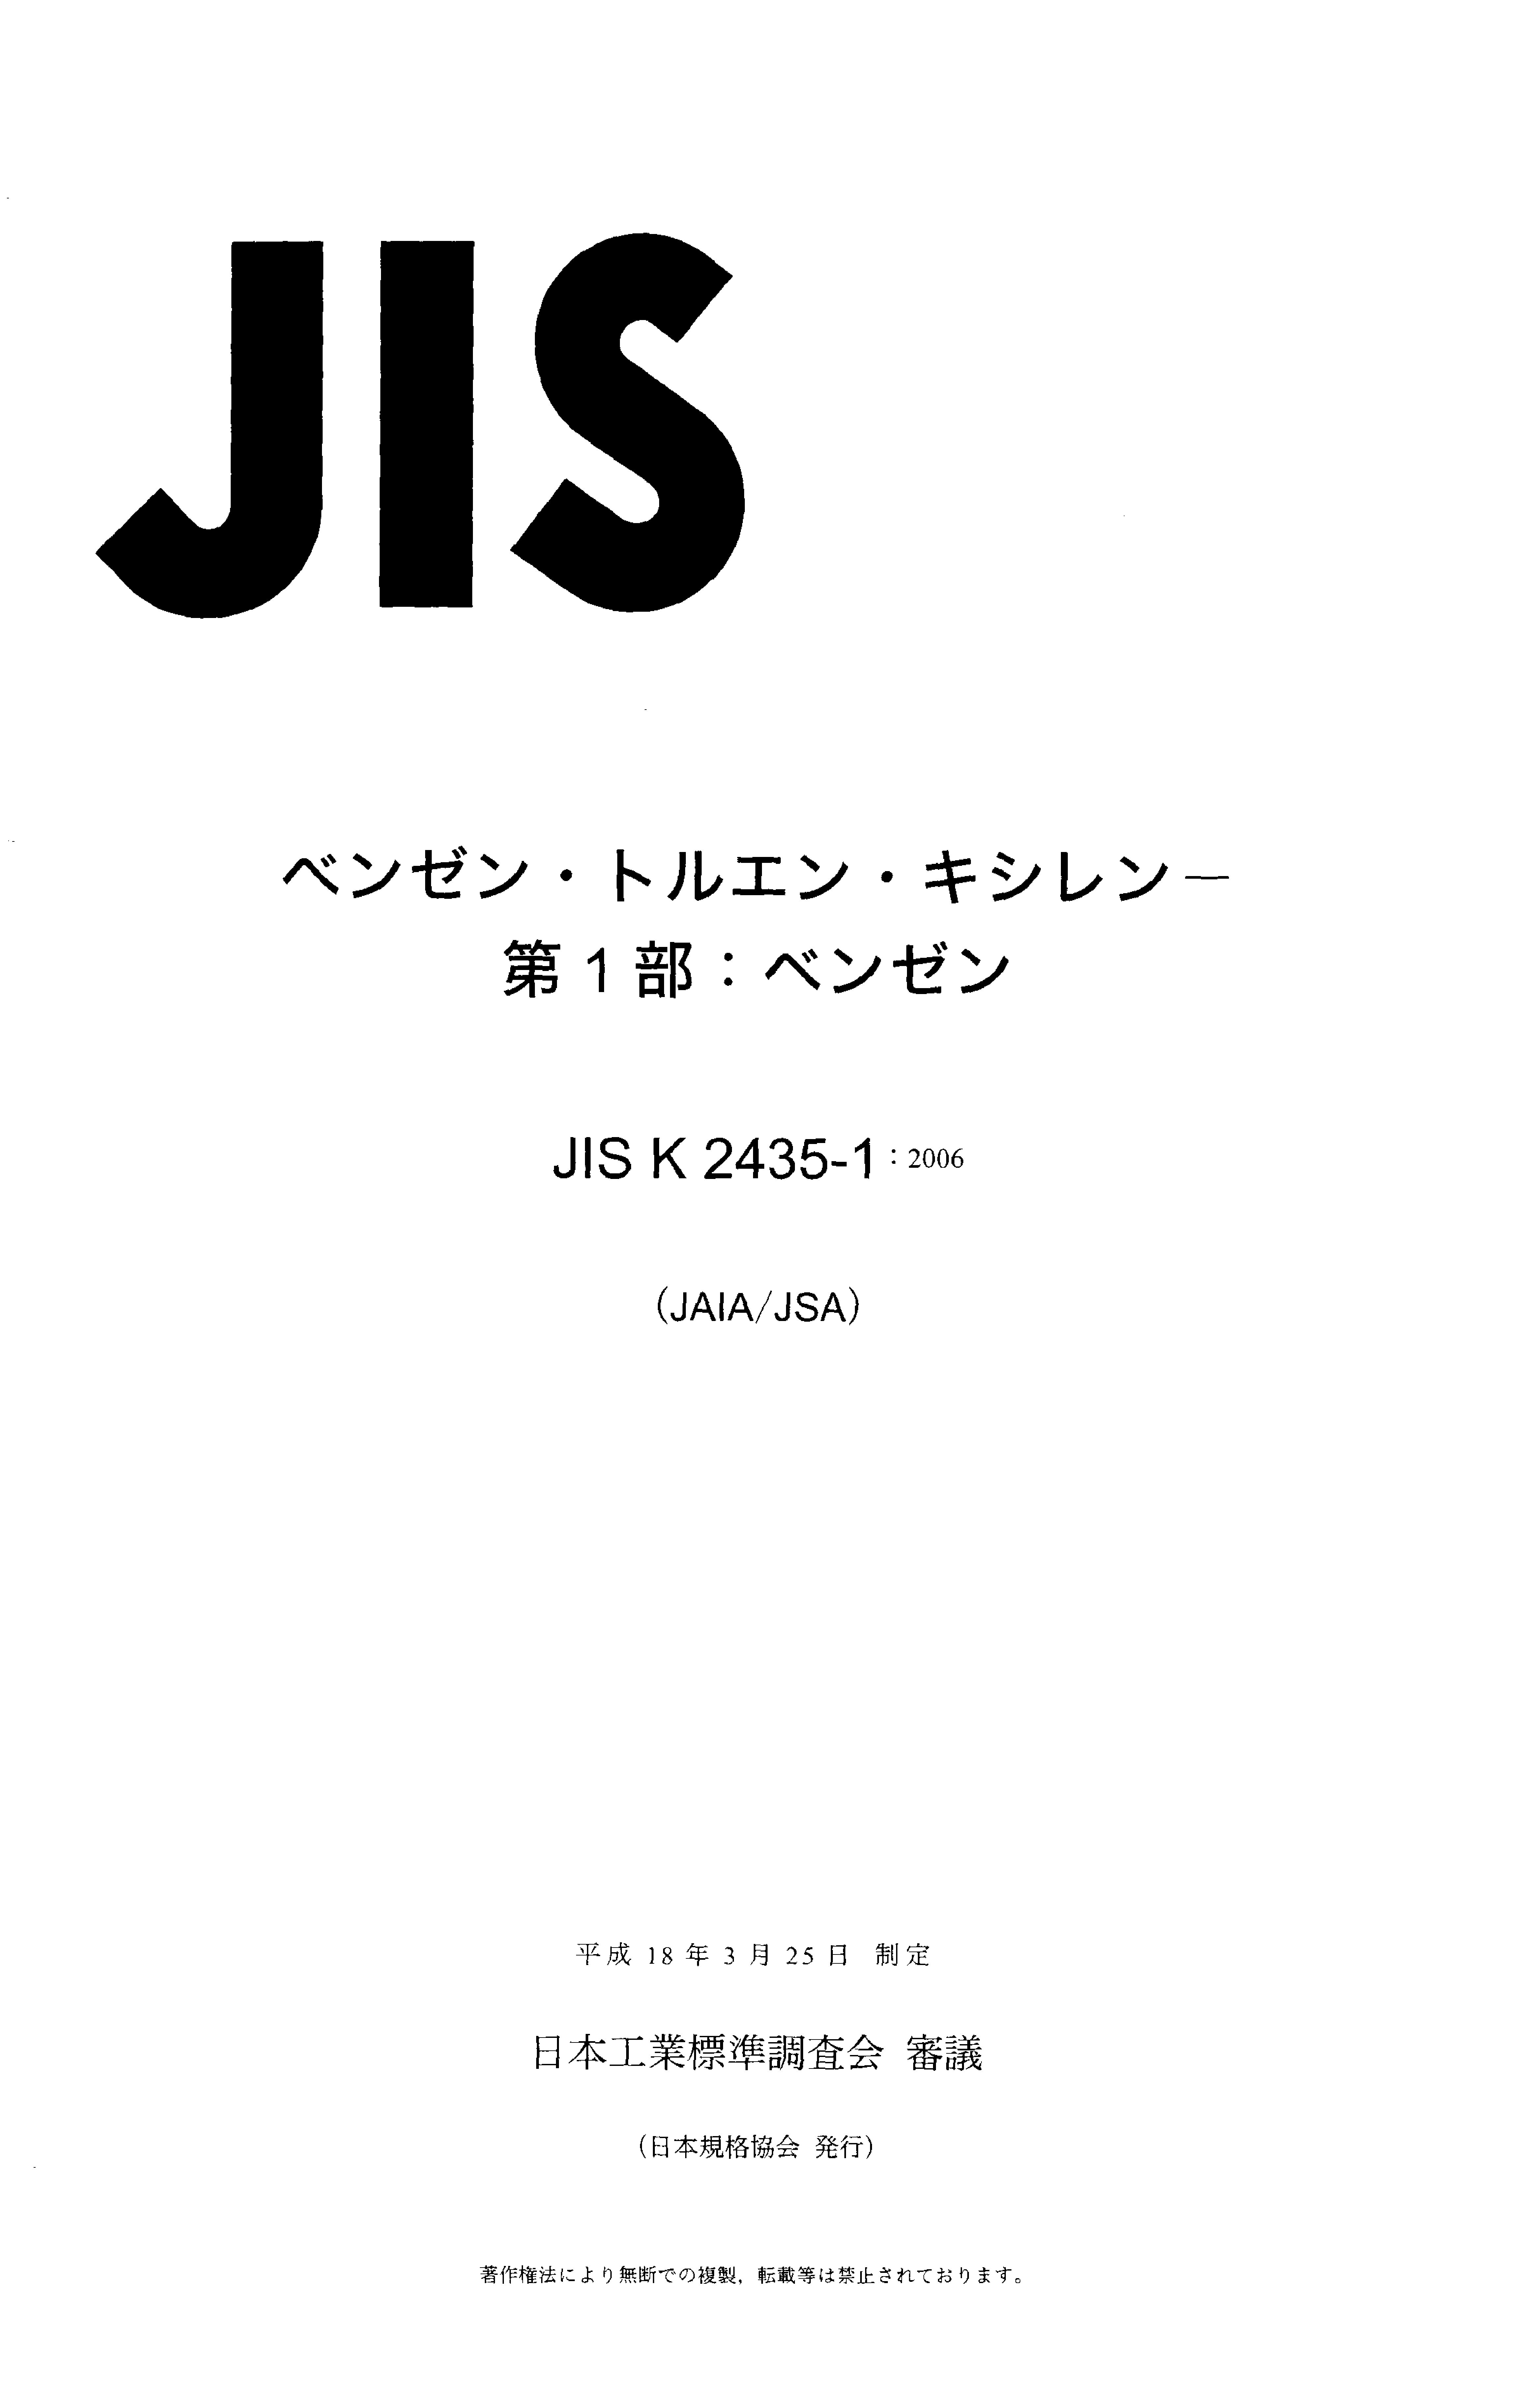 JIS K 2435-1:2006封面图